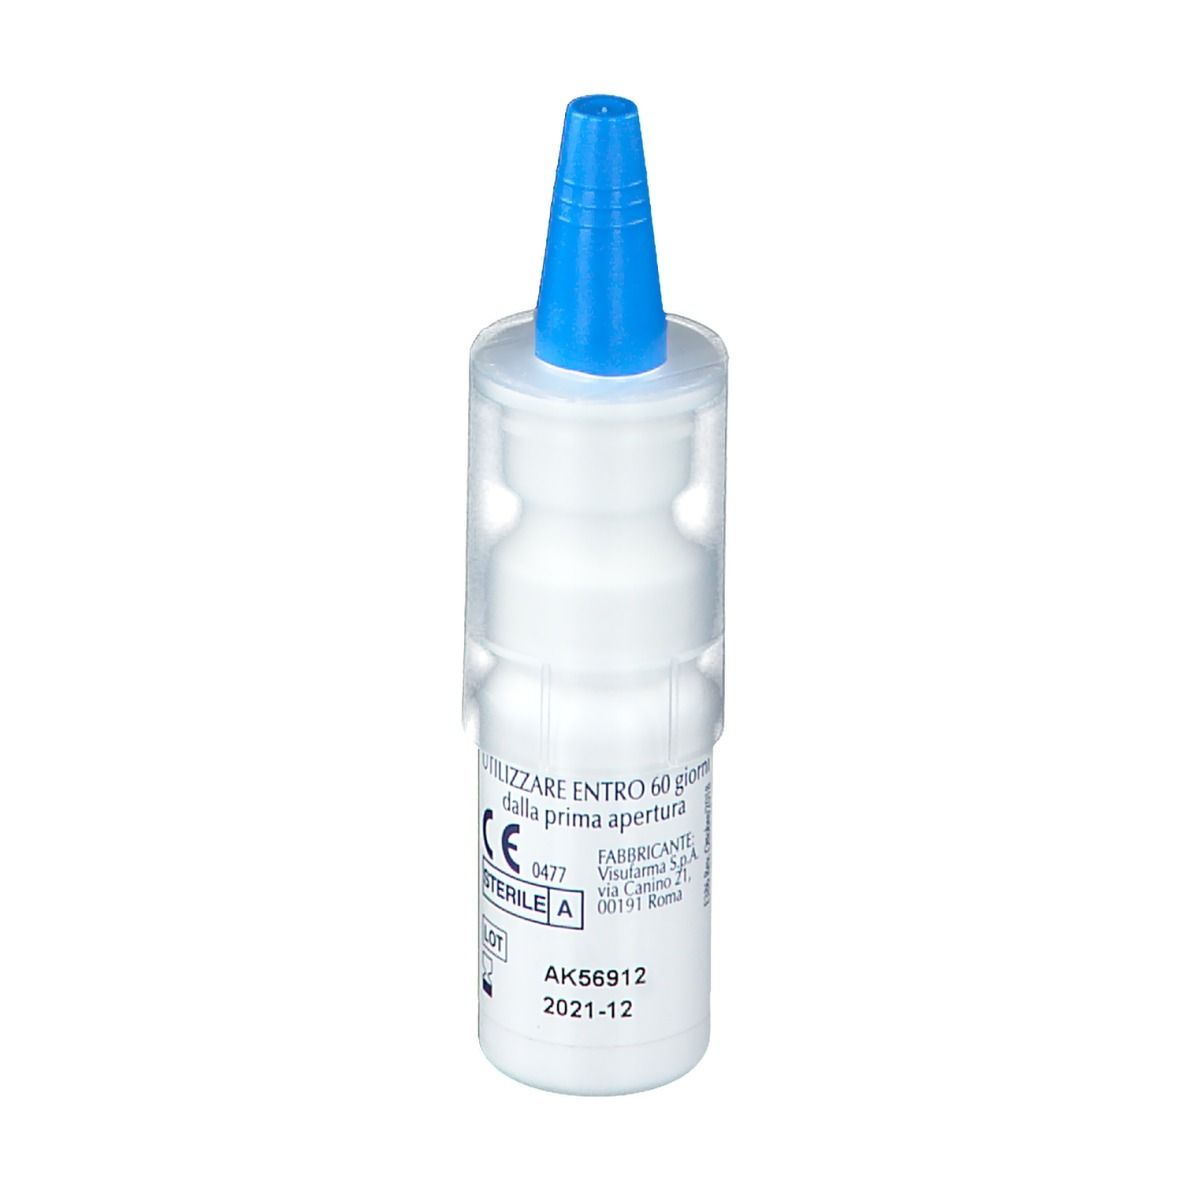 VisuXL Soluzione Oftalmica 10 ml - Redcare